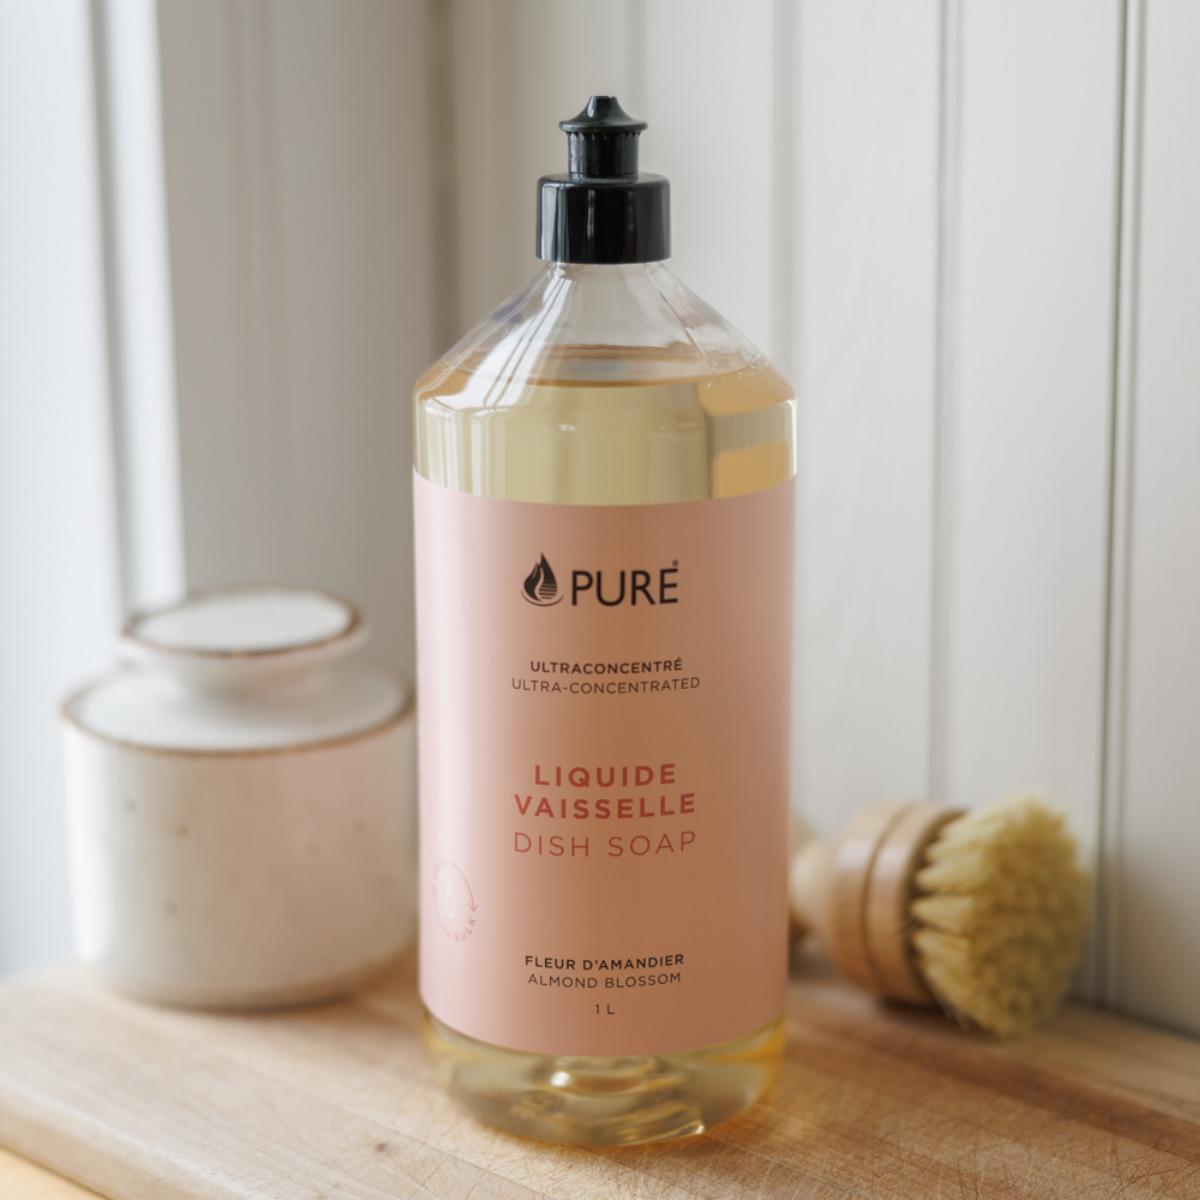 Pure_1411_liquide_vaisselle_fleur_damandier_1Ldish_soap_almond_blossom.png